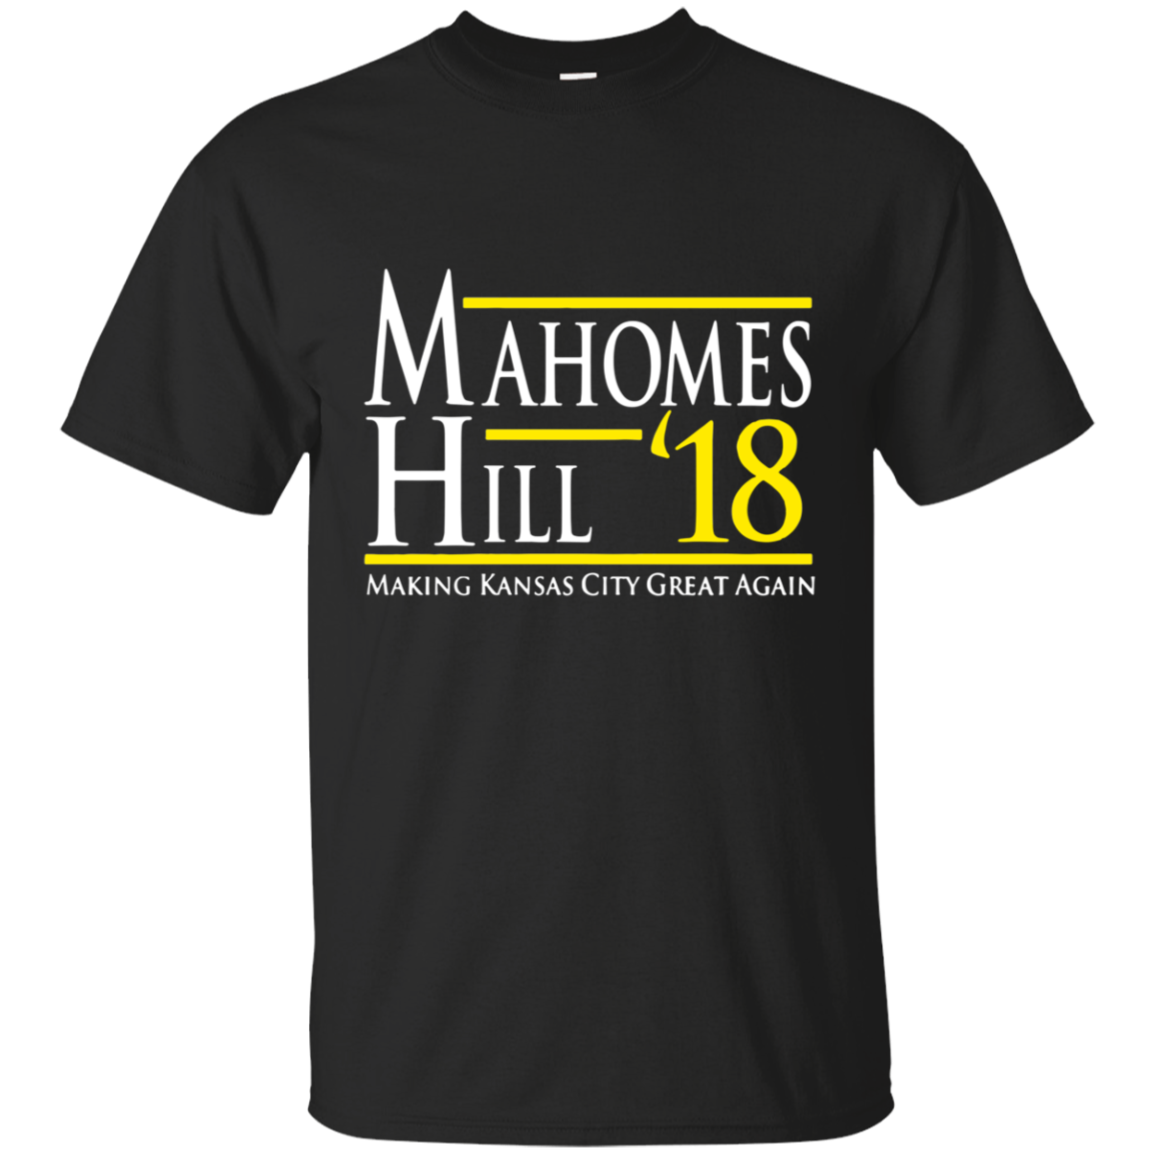 Mahomes Hill 18 Making Kansas City Great Again Shirt Shirt